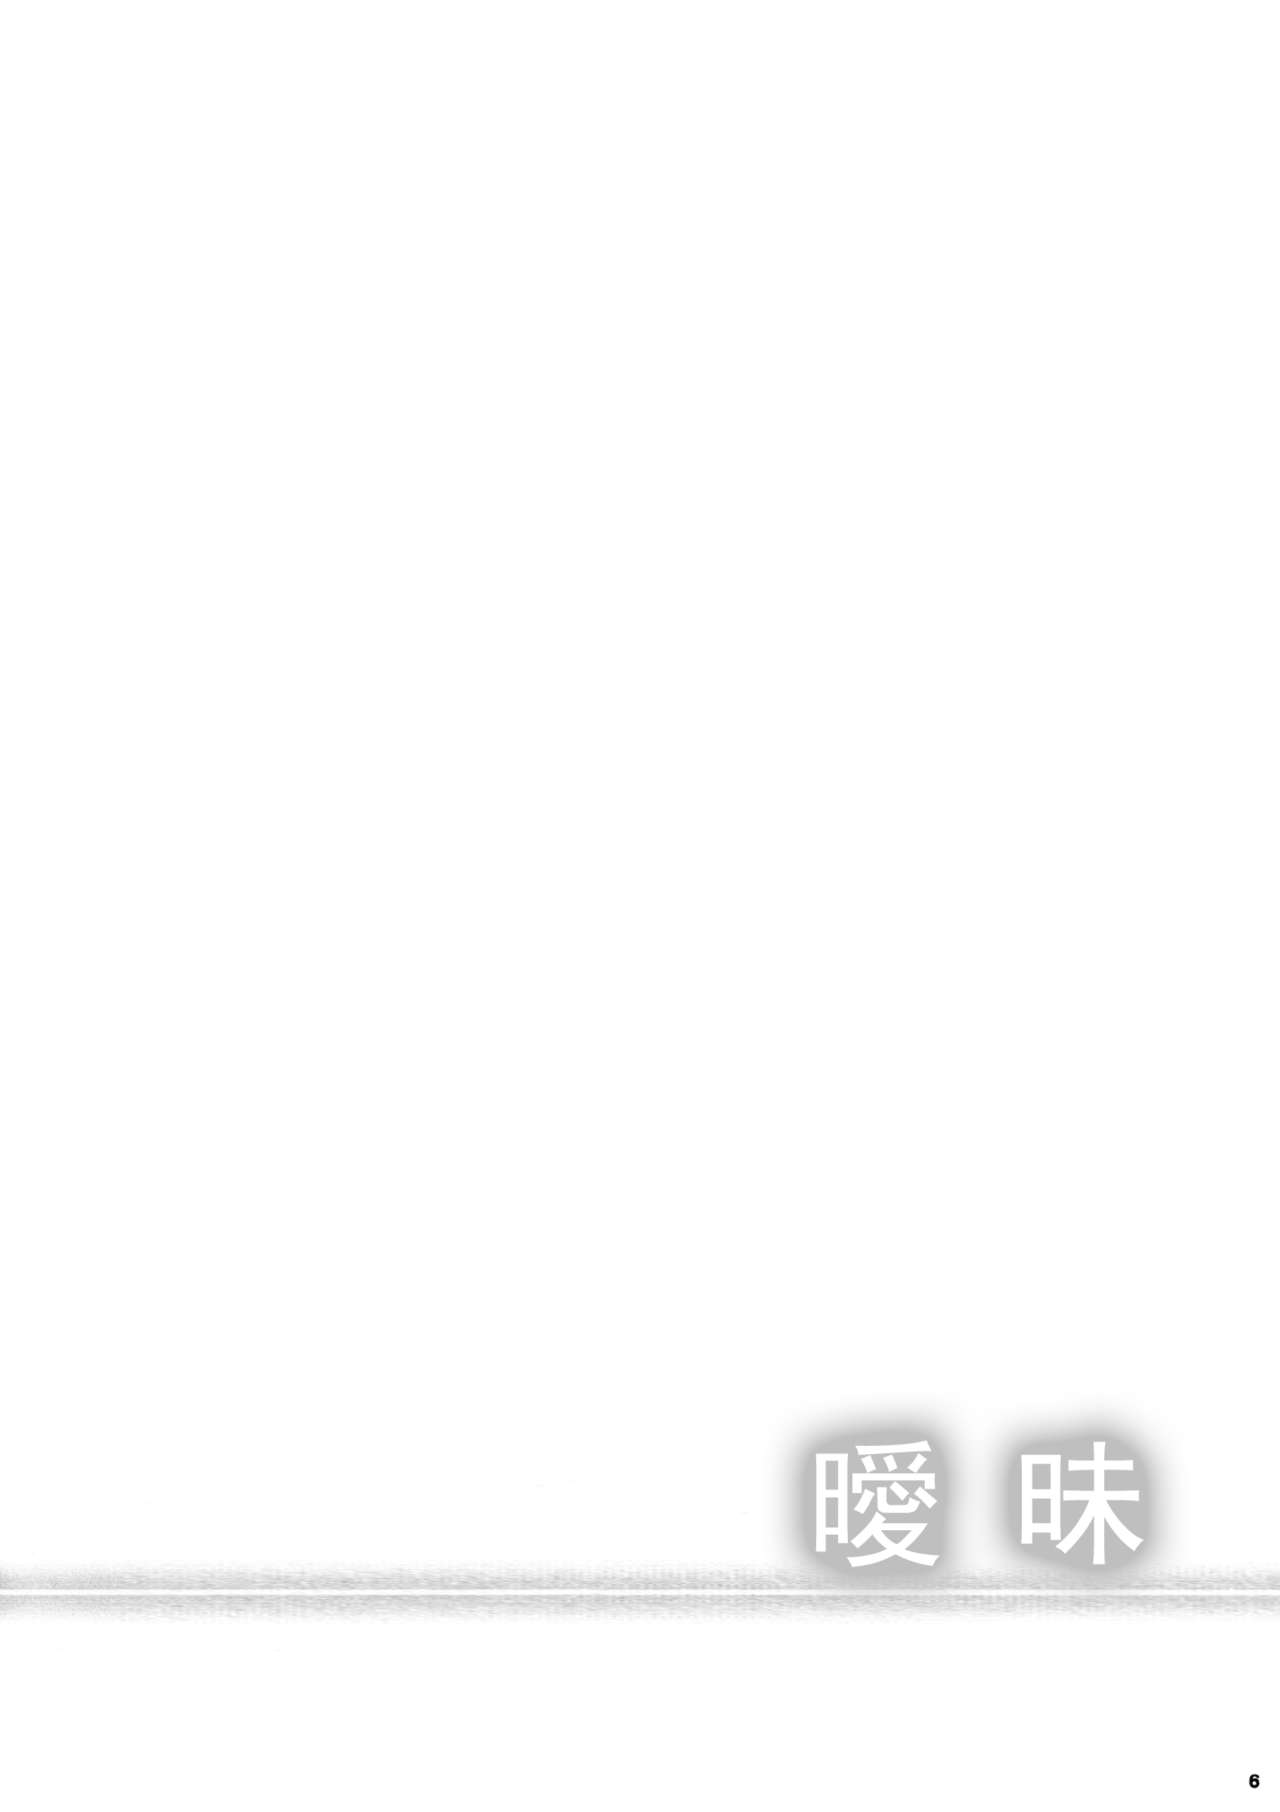 (C82) [Peroppoi tokoro (Chobipero)] Anemone [Chinese] [oottaakkuu] (C82) [ぺろっぽい処 (ちょびぺろ)] アネモネ [中国翻訳]